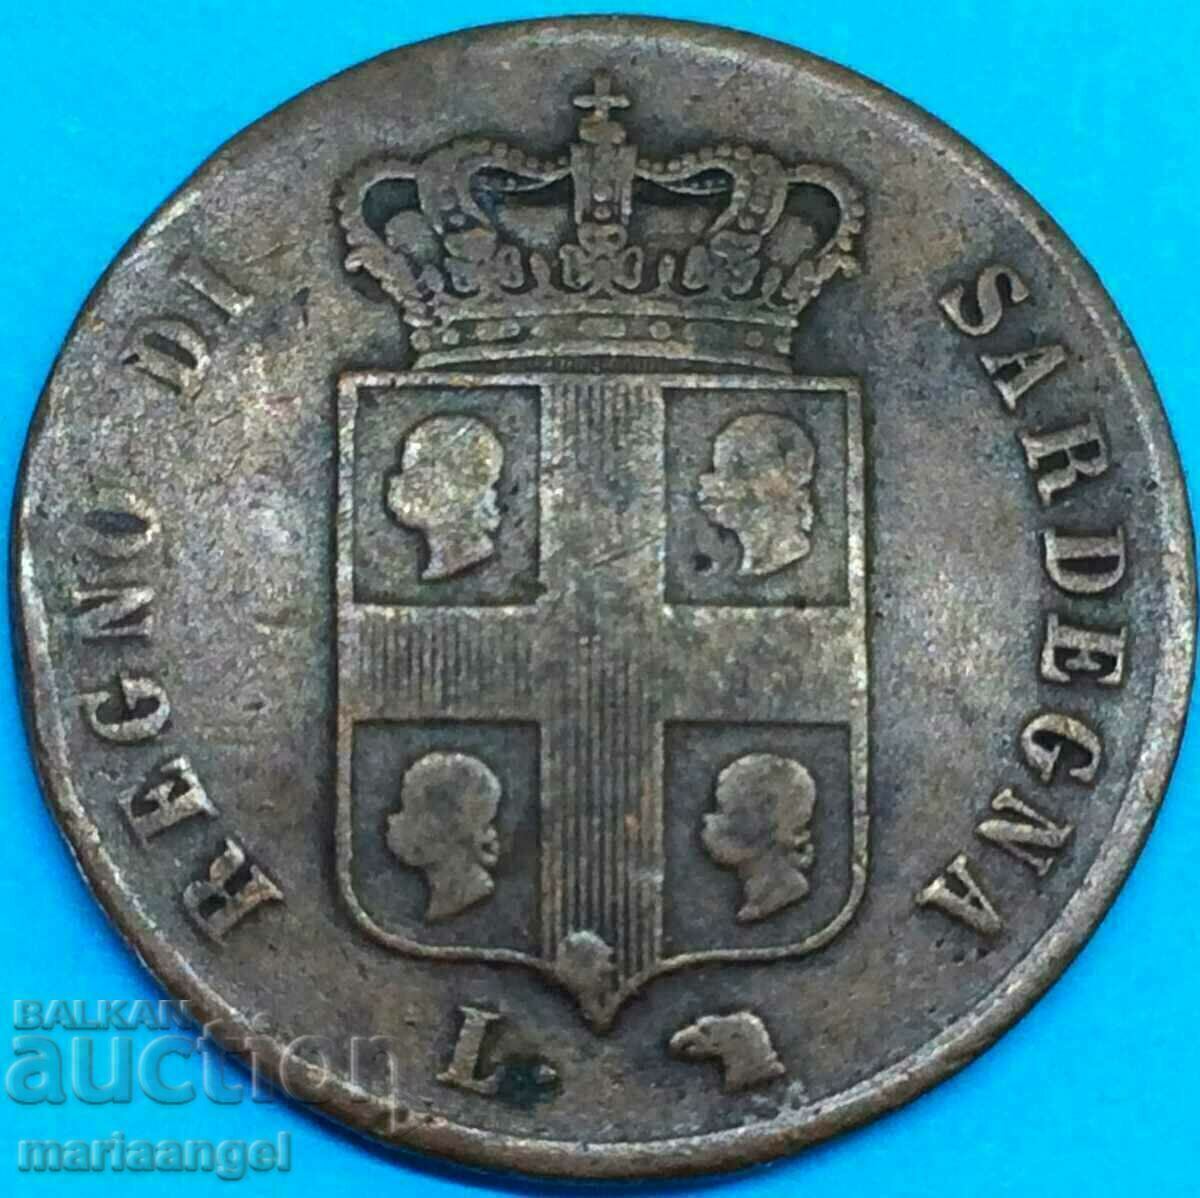 5 centesimi 1842 Italy Sardinia type "4 heads" rare